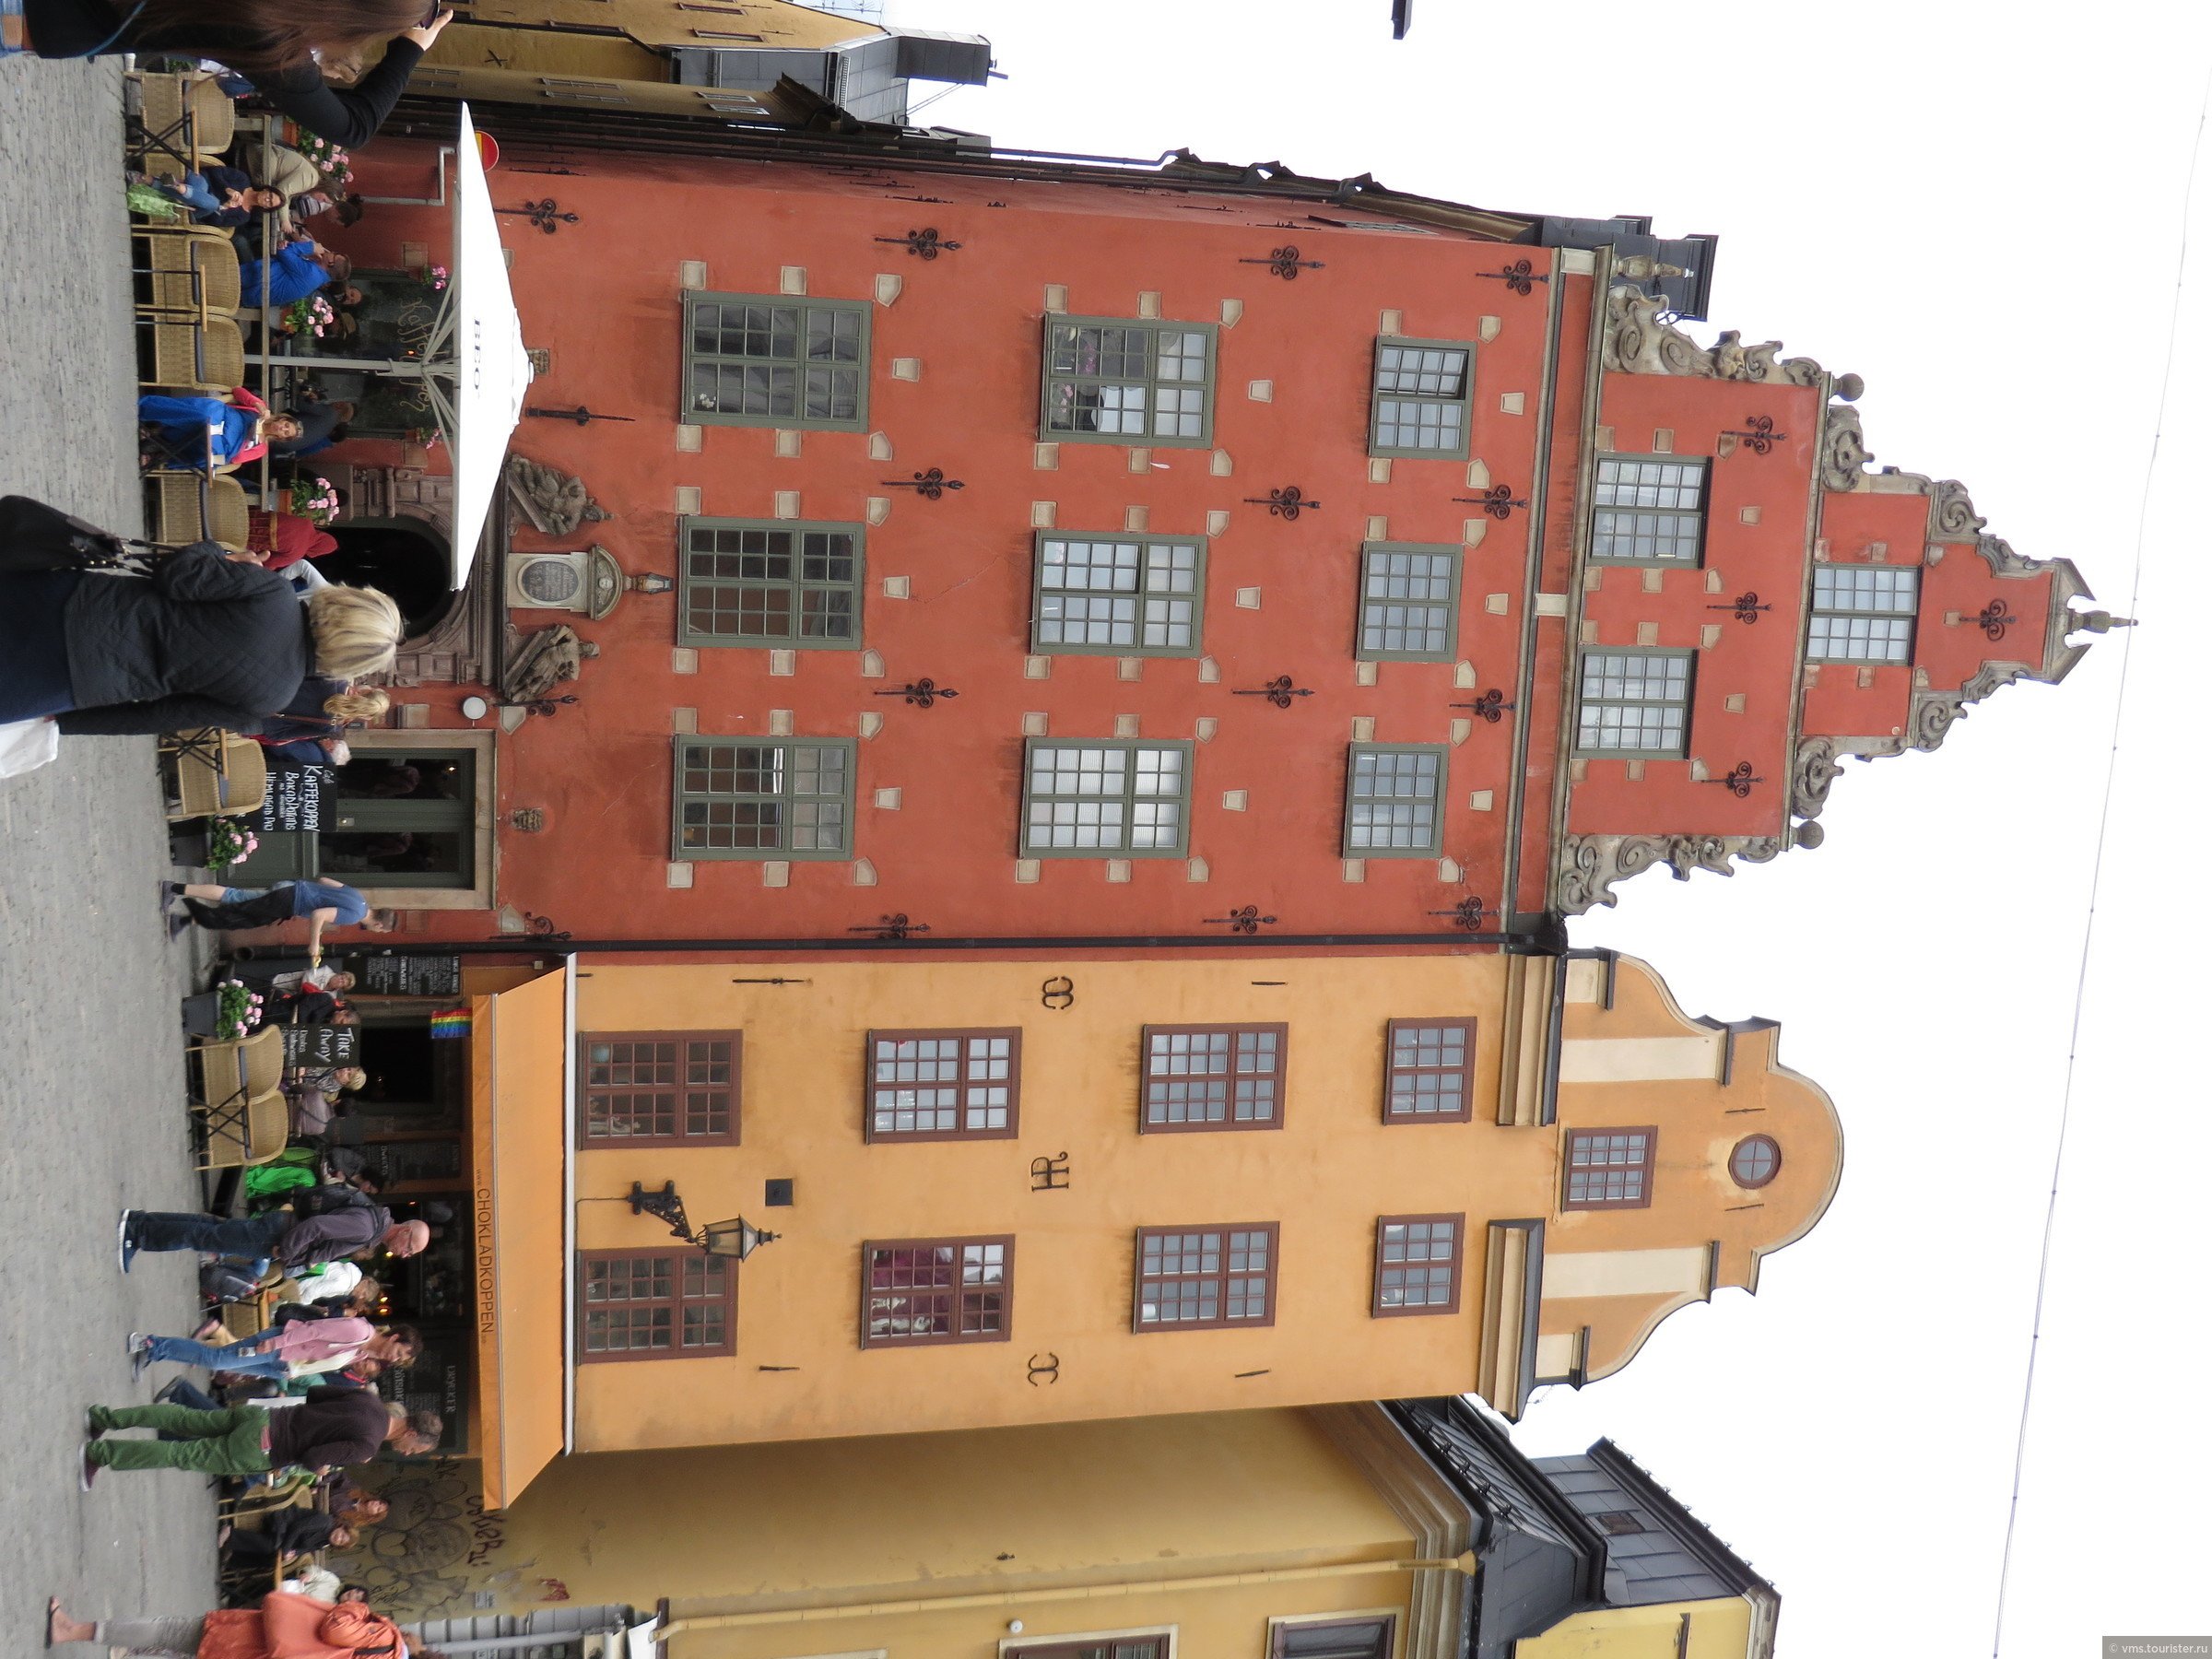 Крыша где жил карлсон. Крыша Карлсона в Стокгольме. Дом Карлсона в Стокгольме. Дом Карлсона в Стокгольме на крыше. Дом в котором жил Карлсон в Стокгольме.